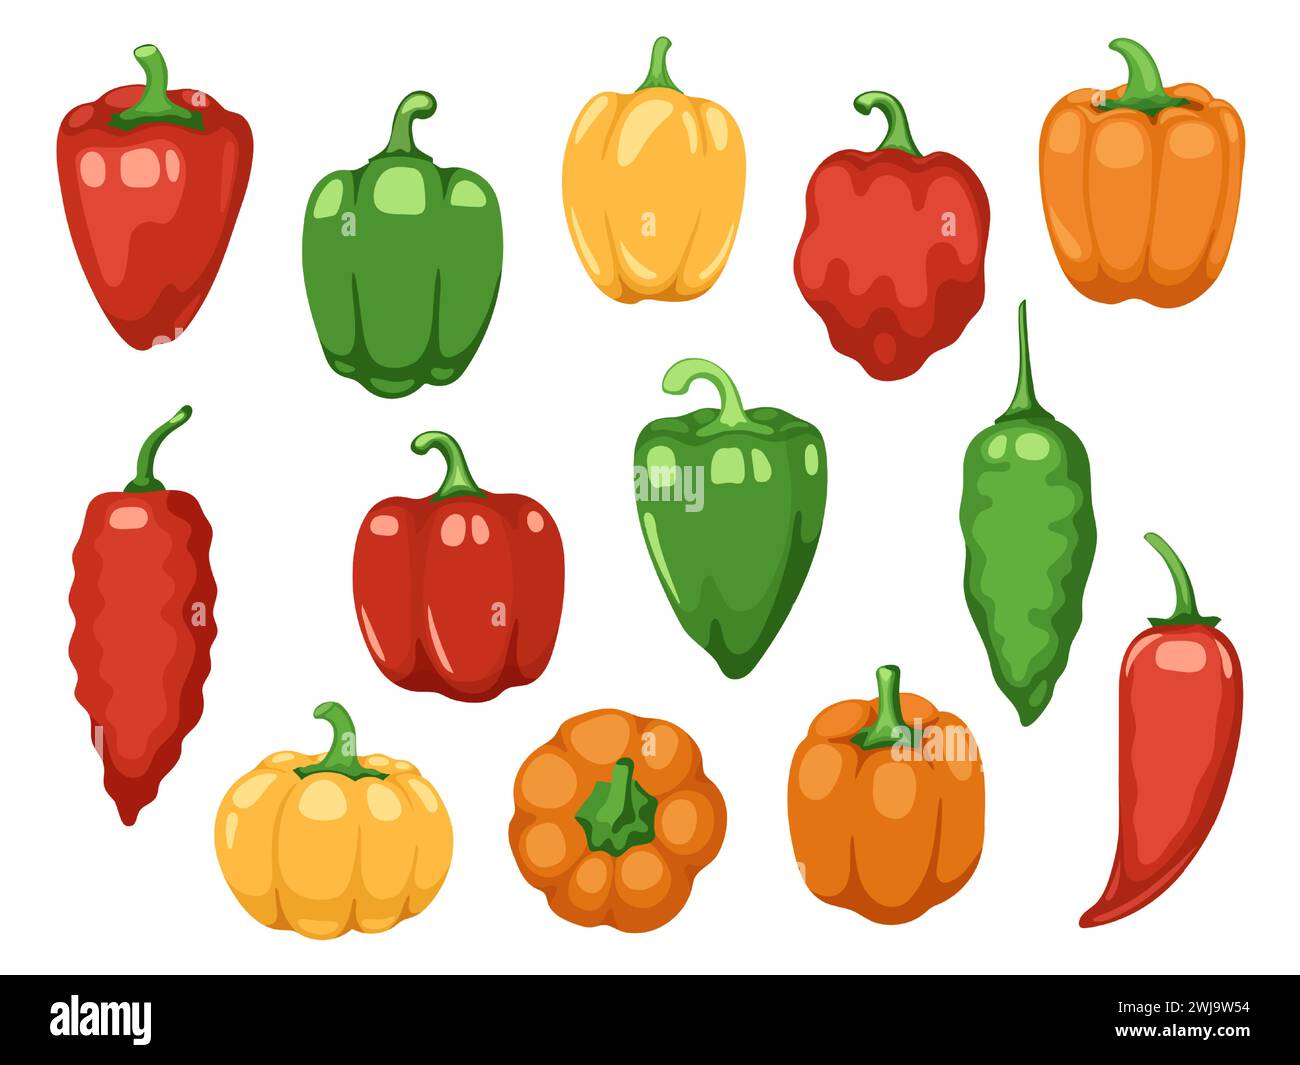 Vari peperoni. Cartoni animati rosso verde giallo arancio paprika dolce, verdure biologiche fresche per cucinare e mangiare sano. Set colorato vettoriale Illustrazione Vettoriale